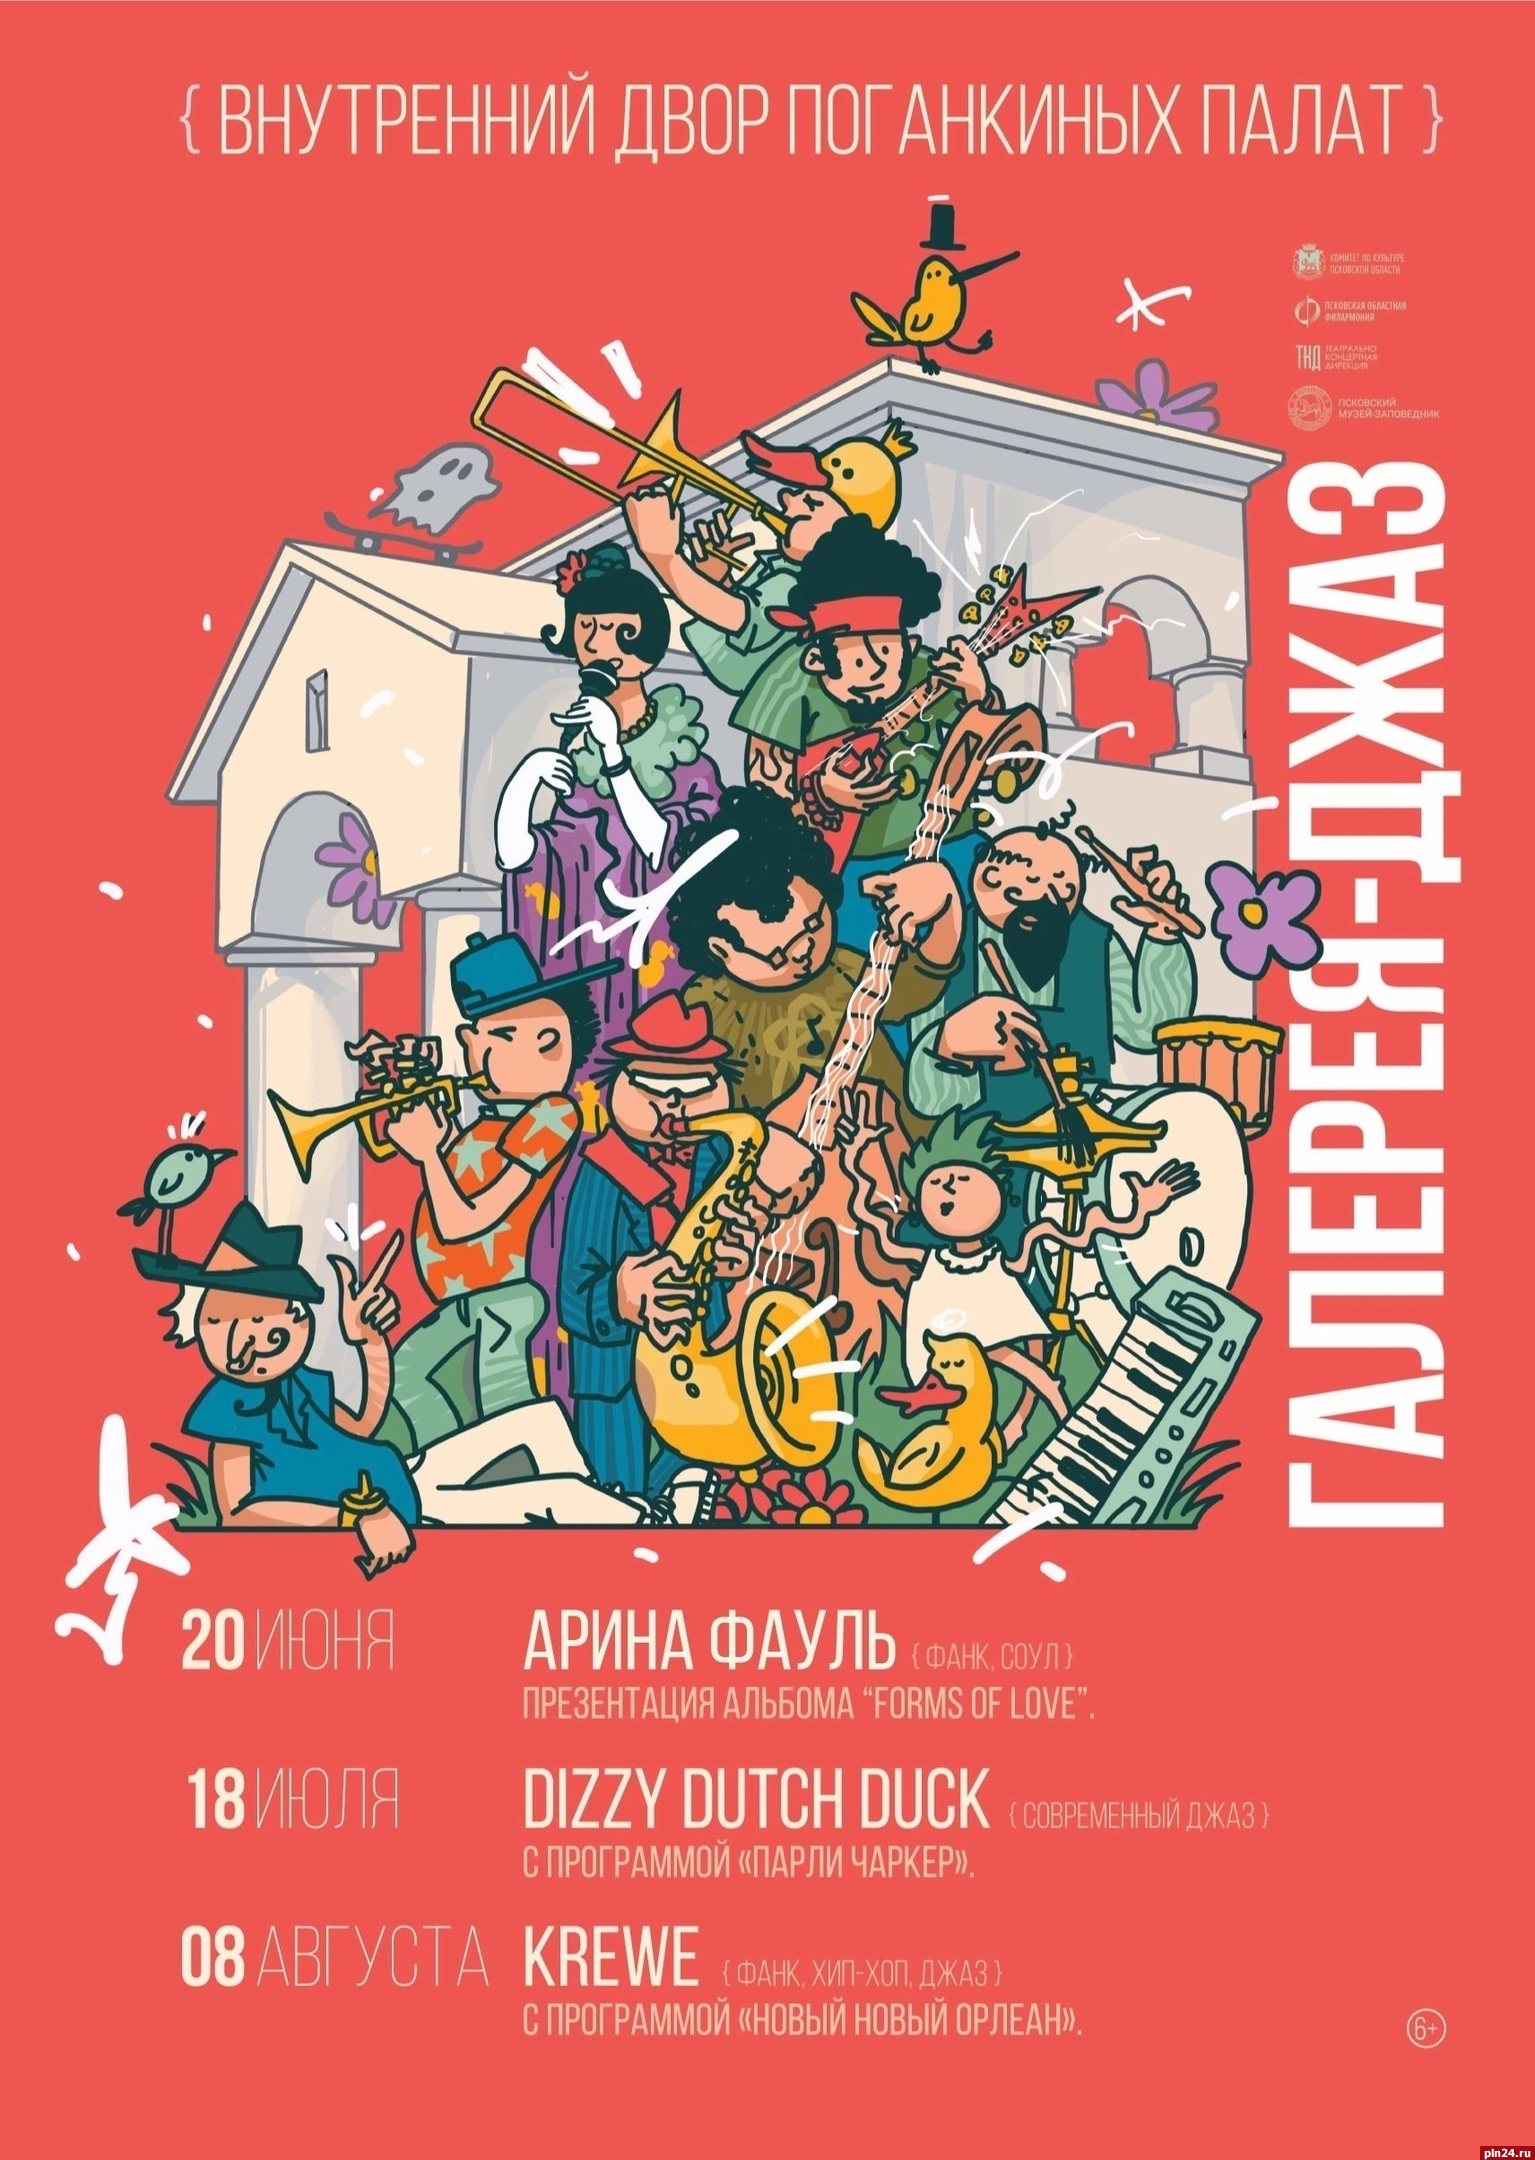 Модерн-джаз группа Dizzy Dutch Duck выступит в Пскове